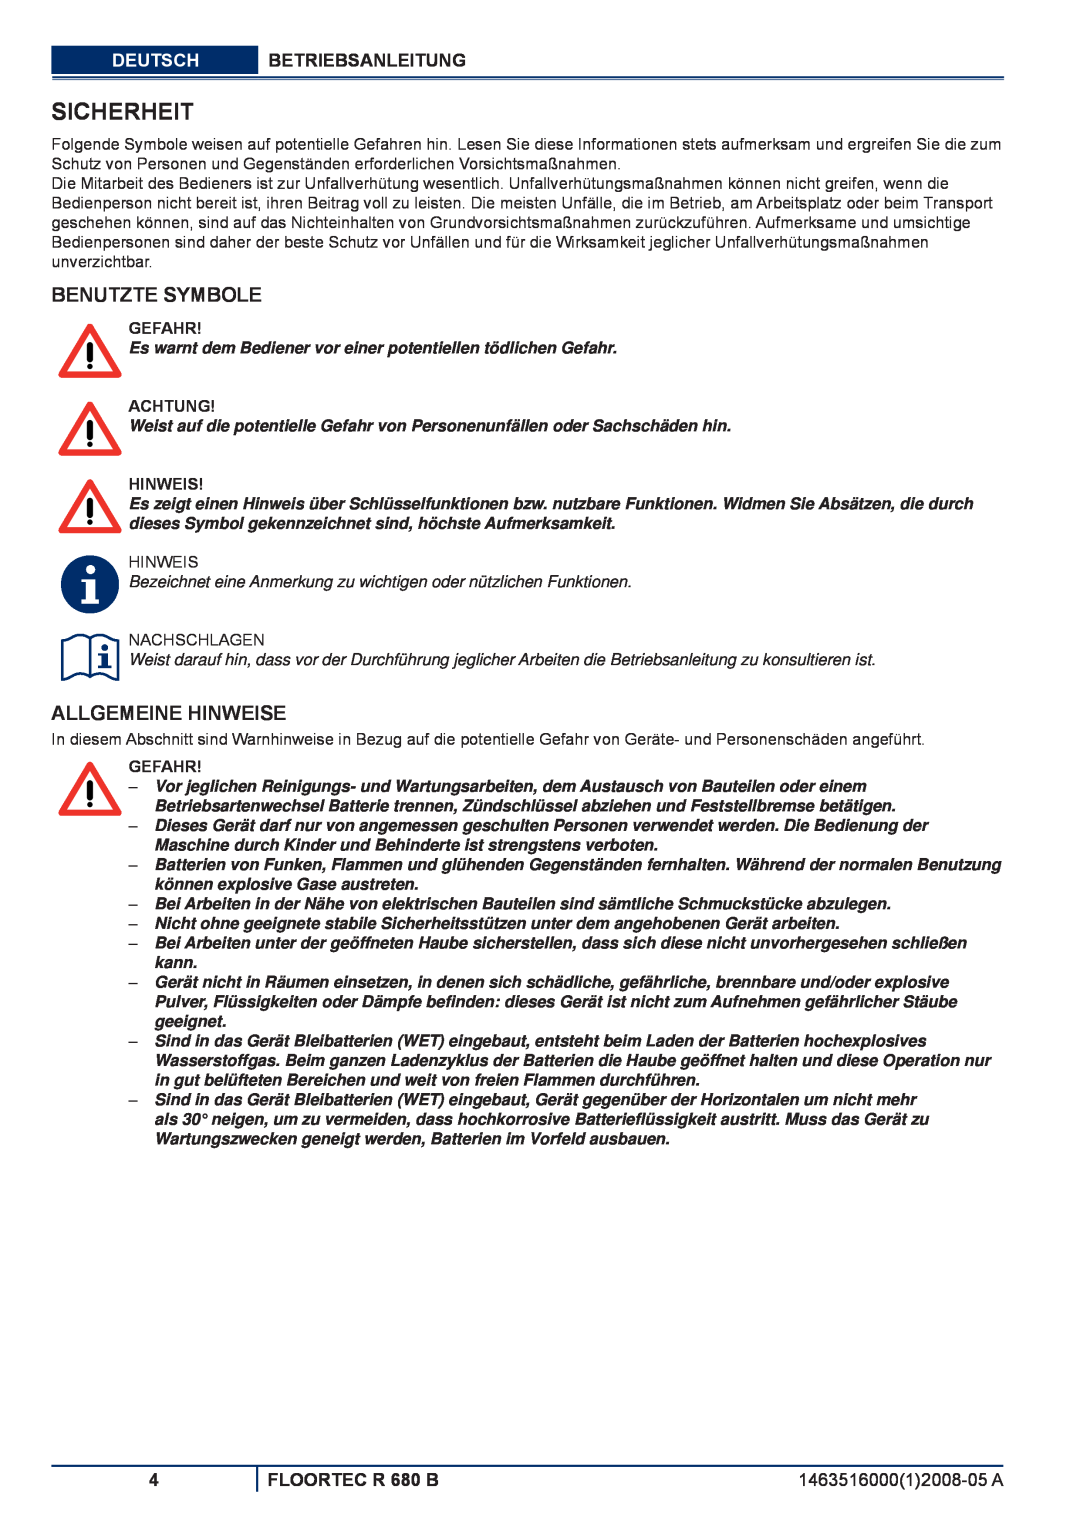 Nilfisk-ALTO Sicherheit, Benutzte Symbole, Allgemeine Hinweise, Deutsch Betriebsanleitung, FLOORTEC R 680 B, Gefahr 